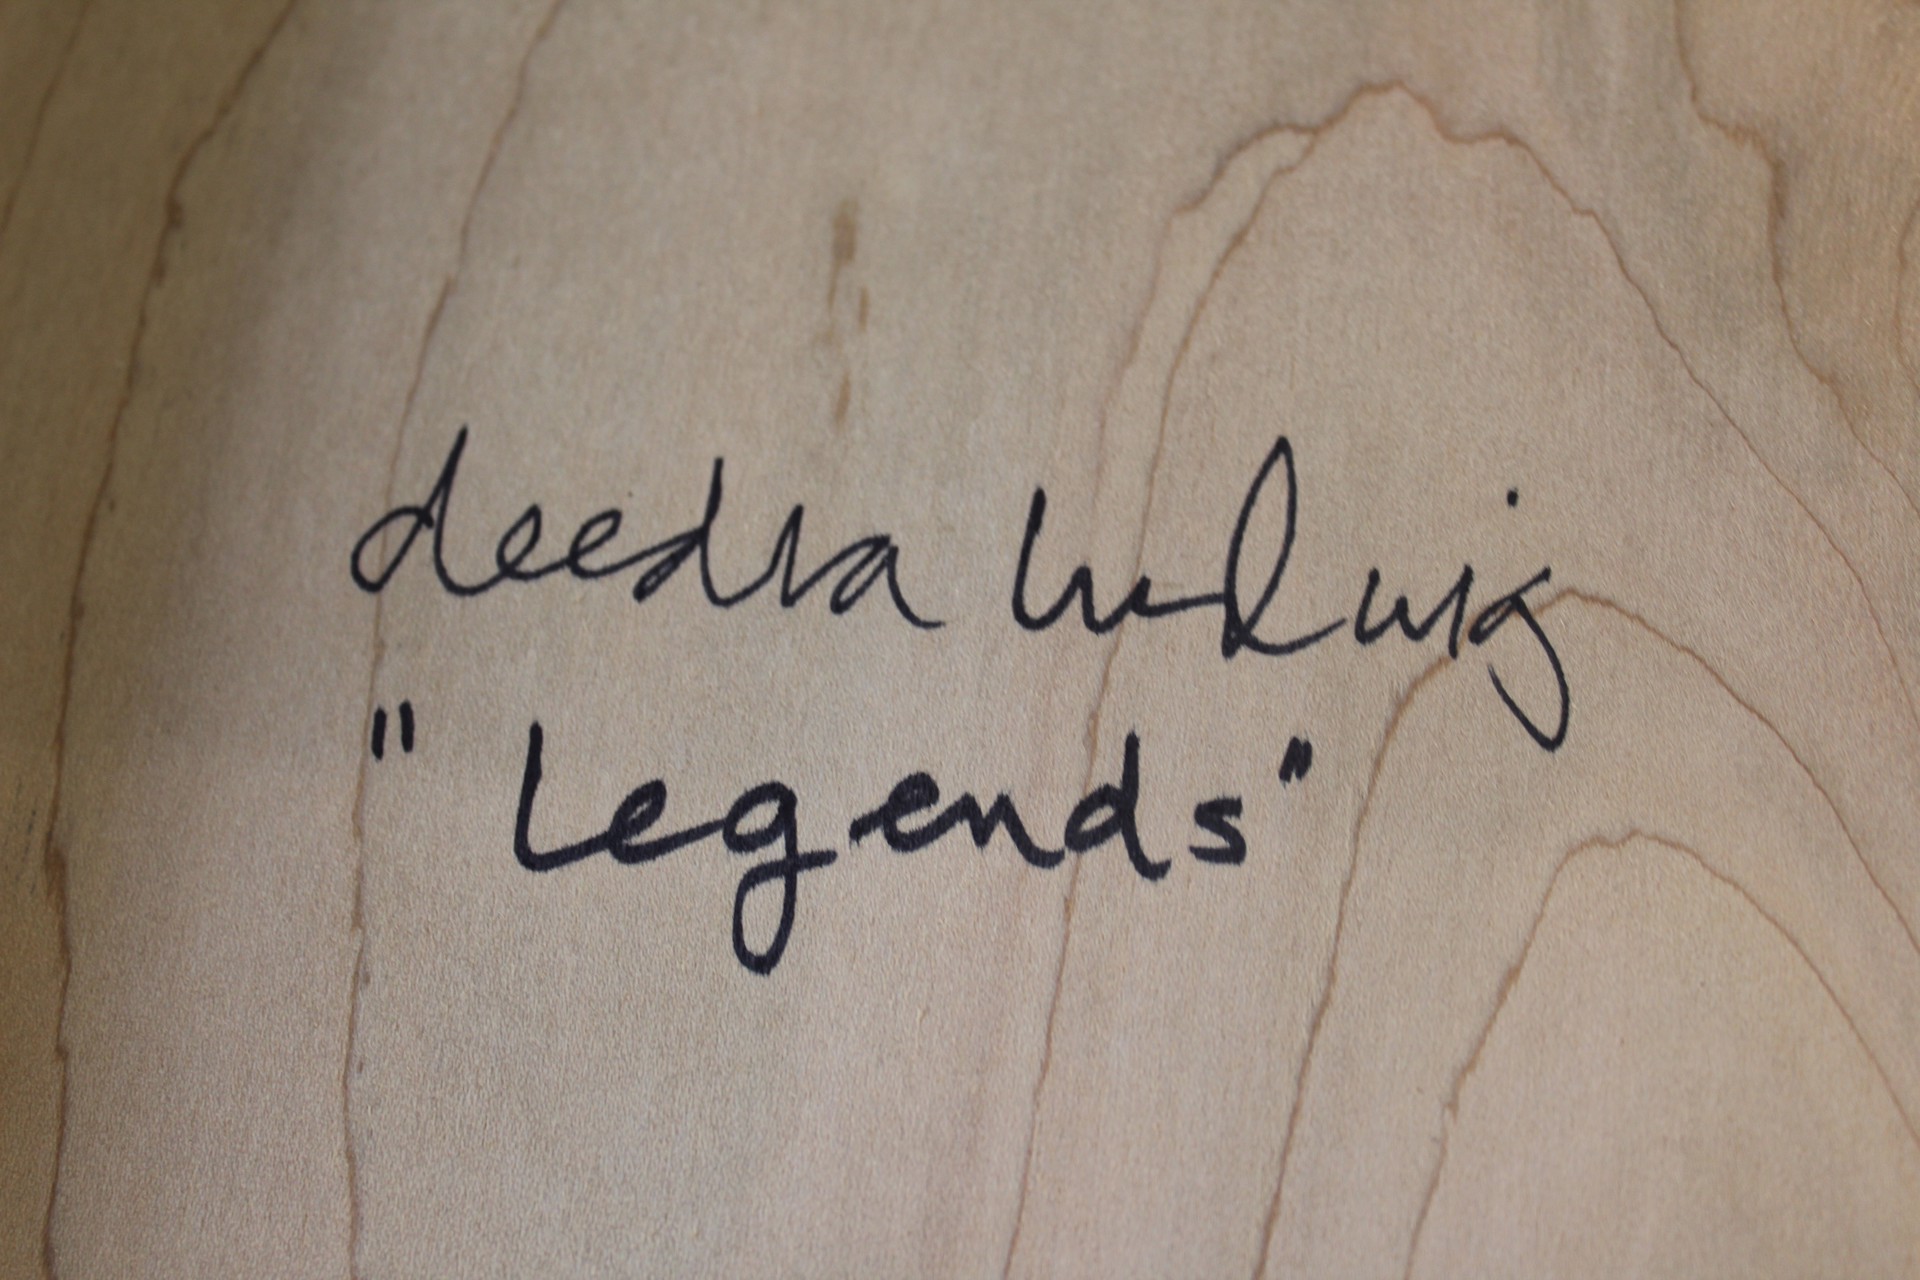 Legends by Deedra Ludwig